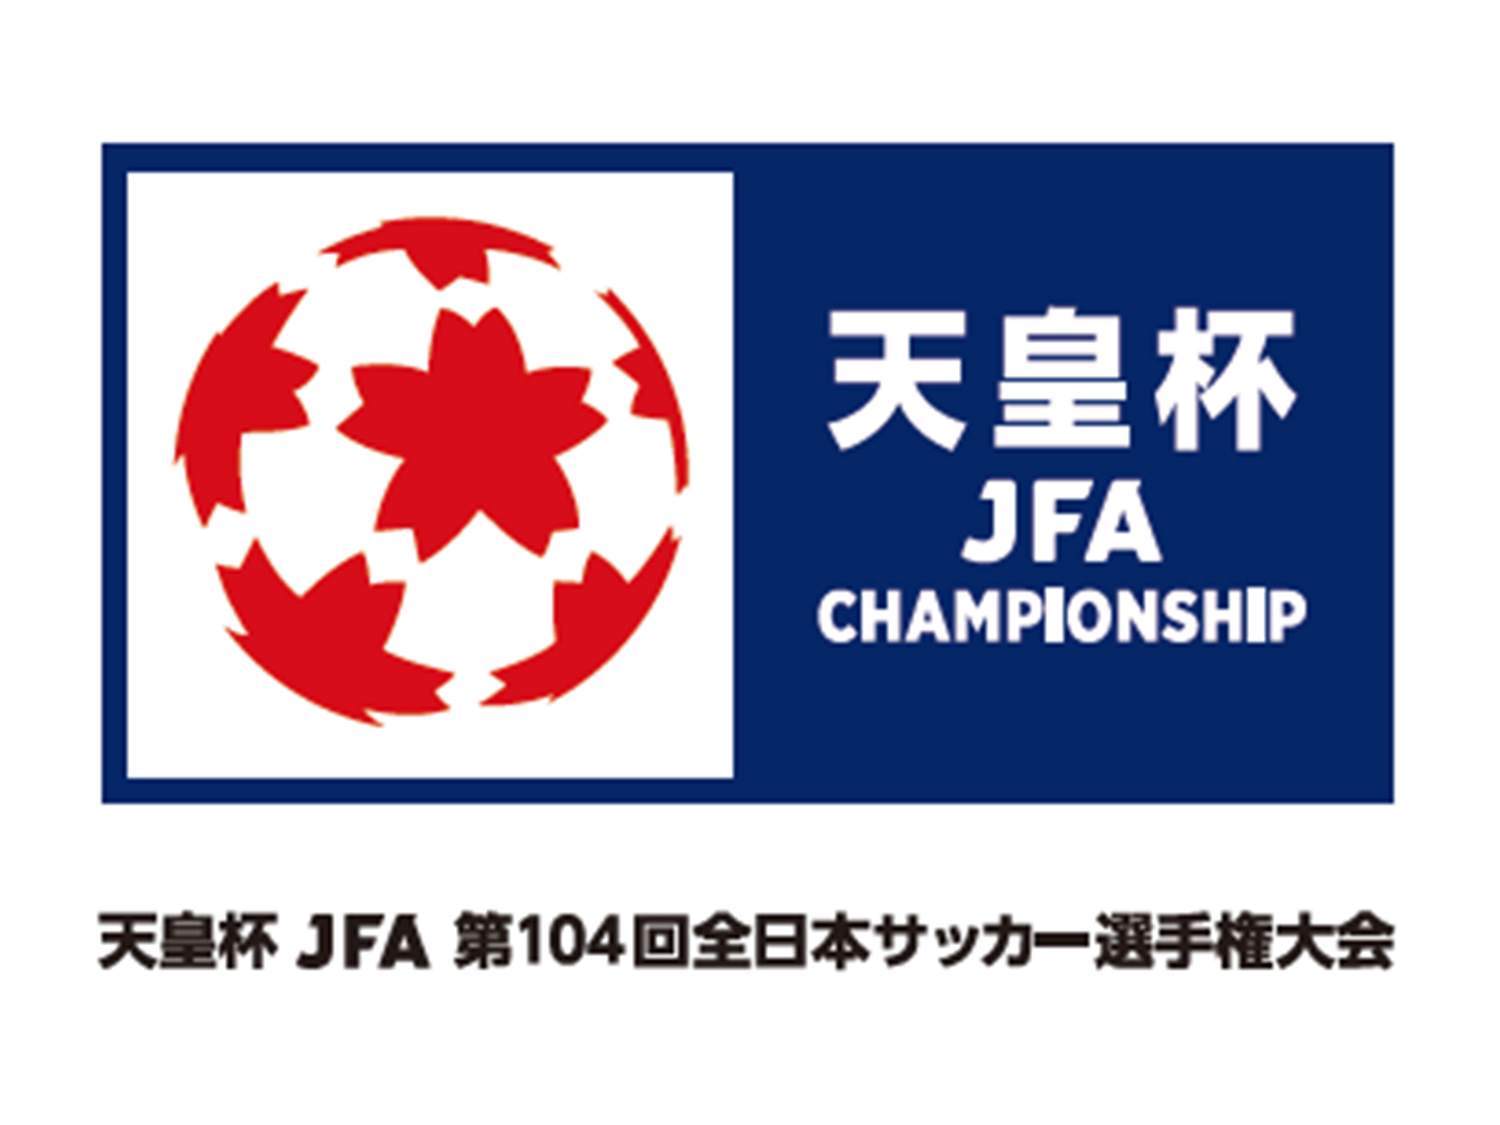 天皇杯 JFA 第104回全日本サッカー選手権大会 2回戦に関して